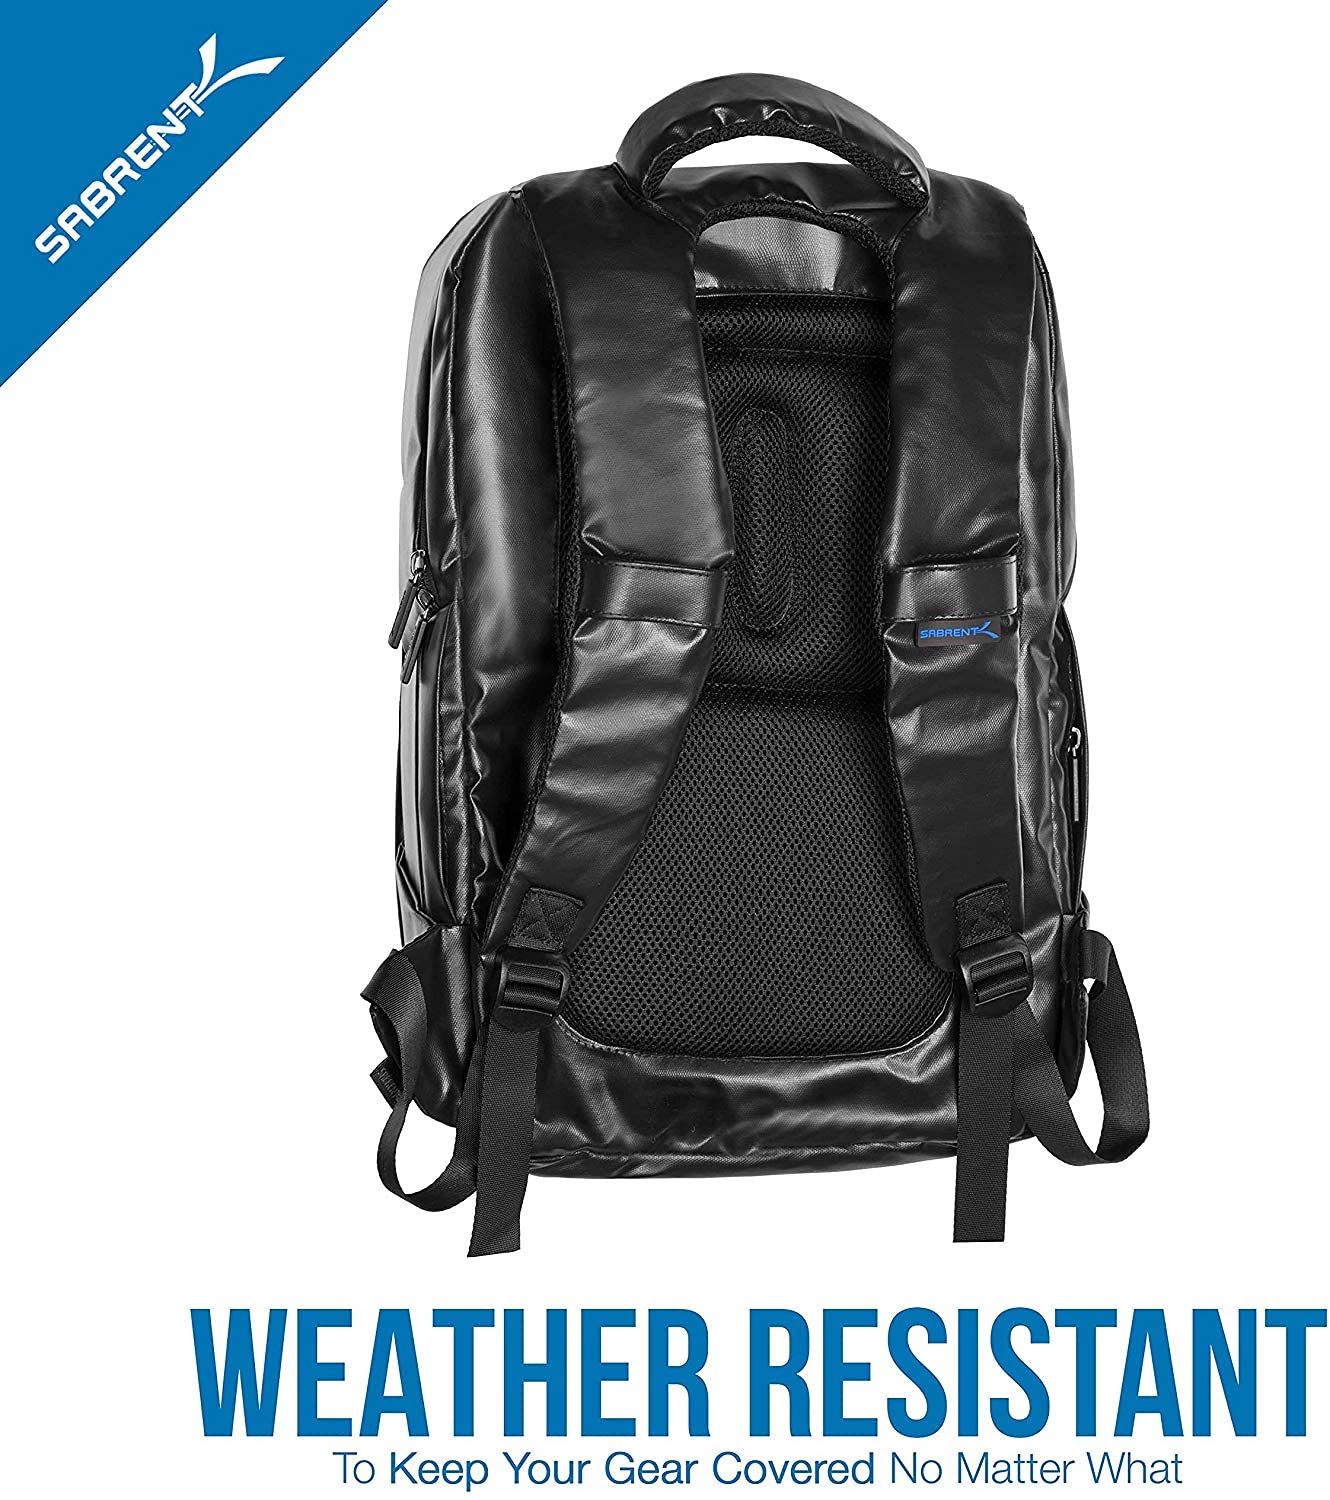 Sabrent Weather Resistant Backpack (BG-BPKP)